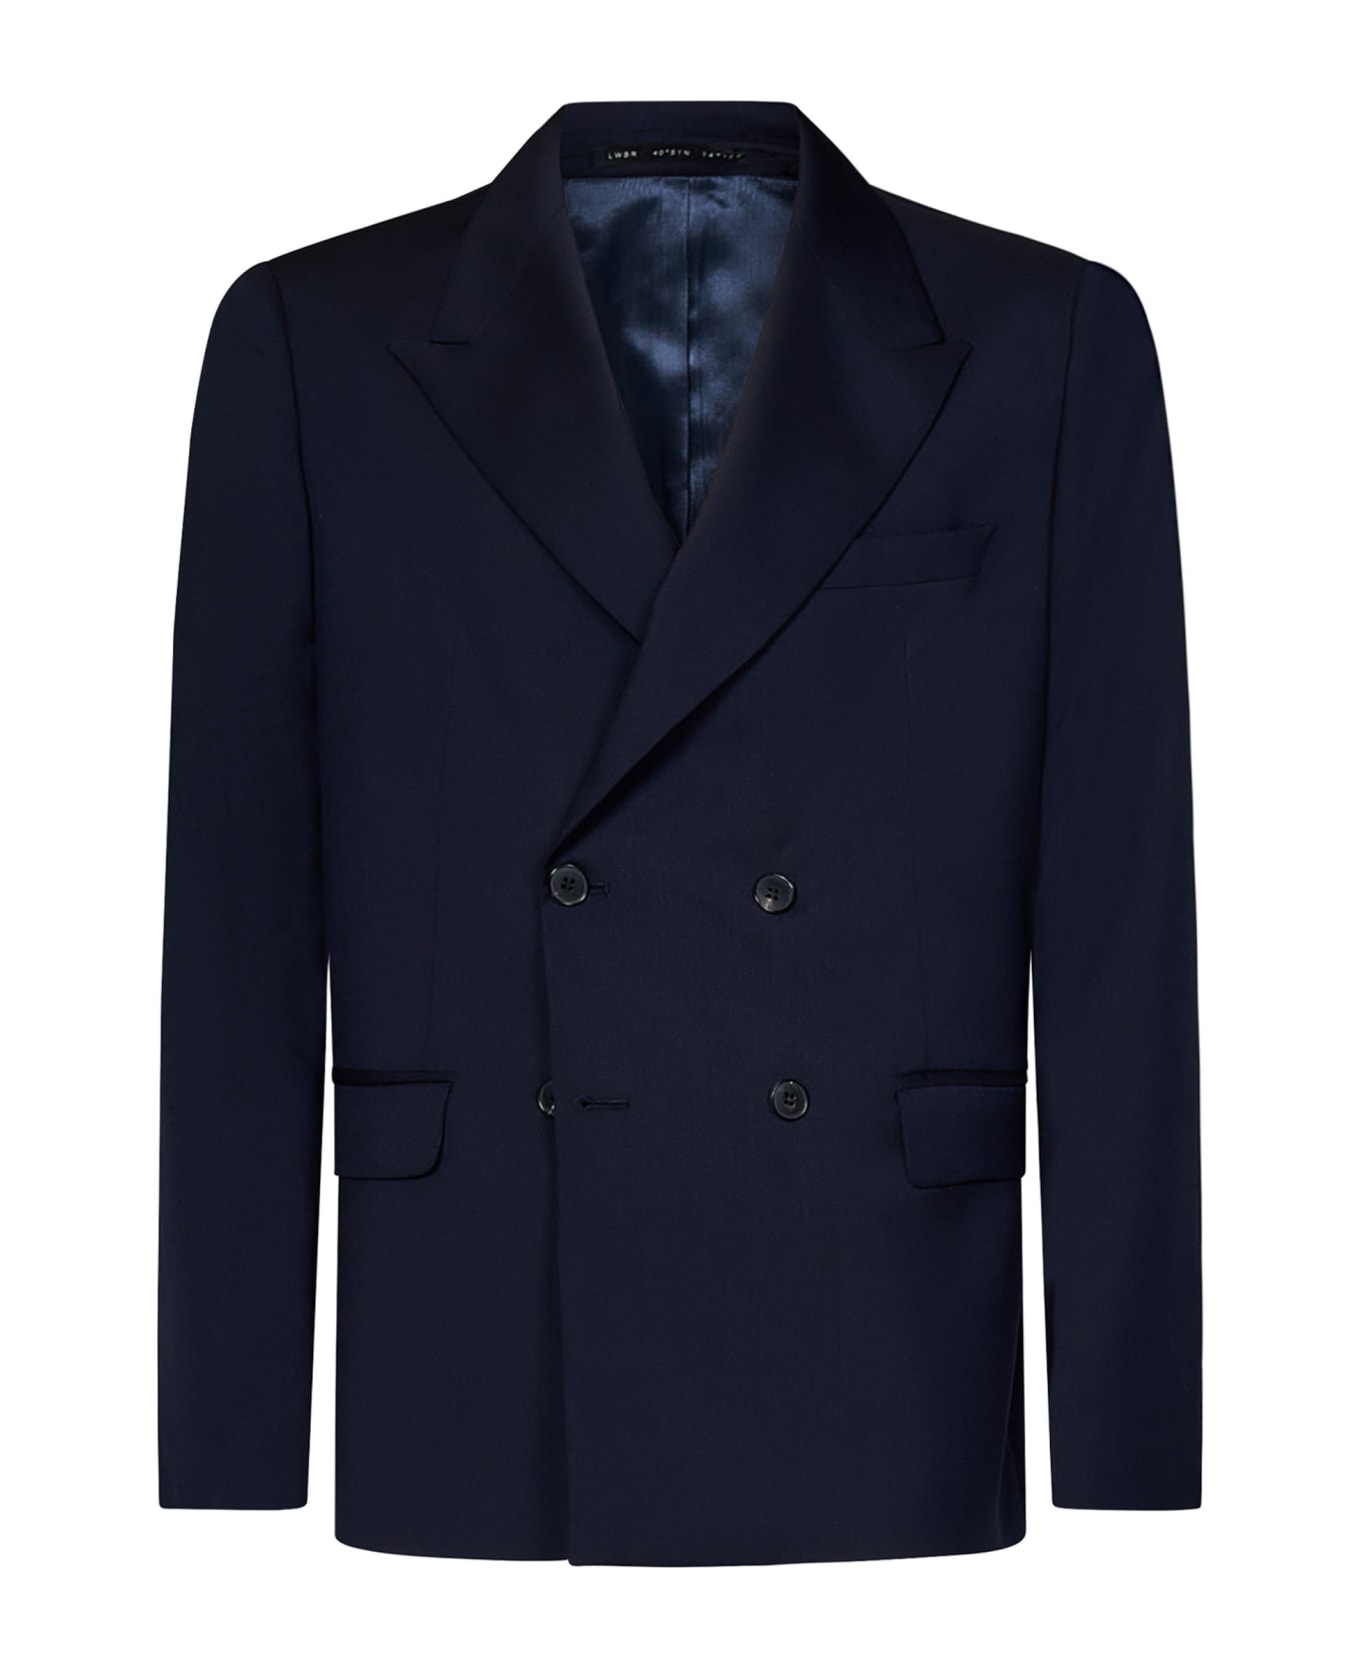 Low Brand 2b Suit - Blue